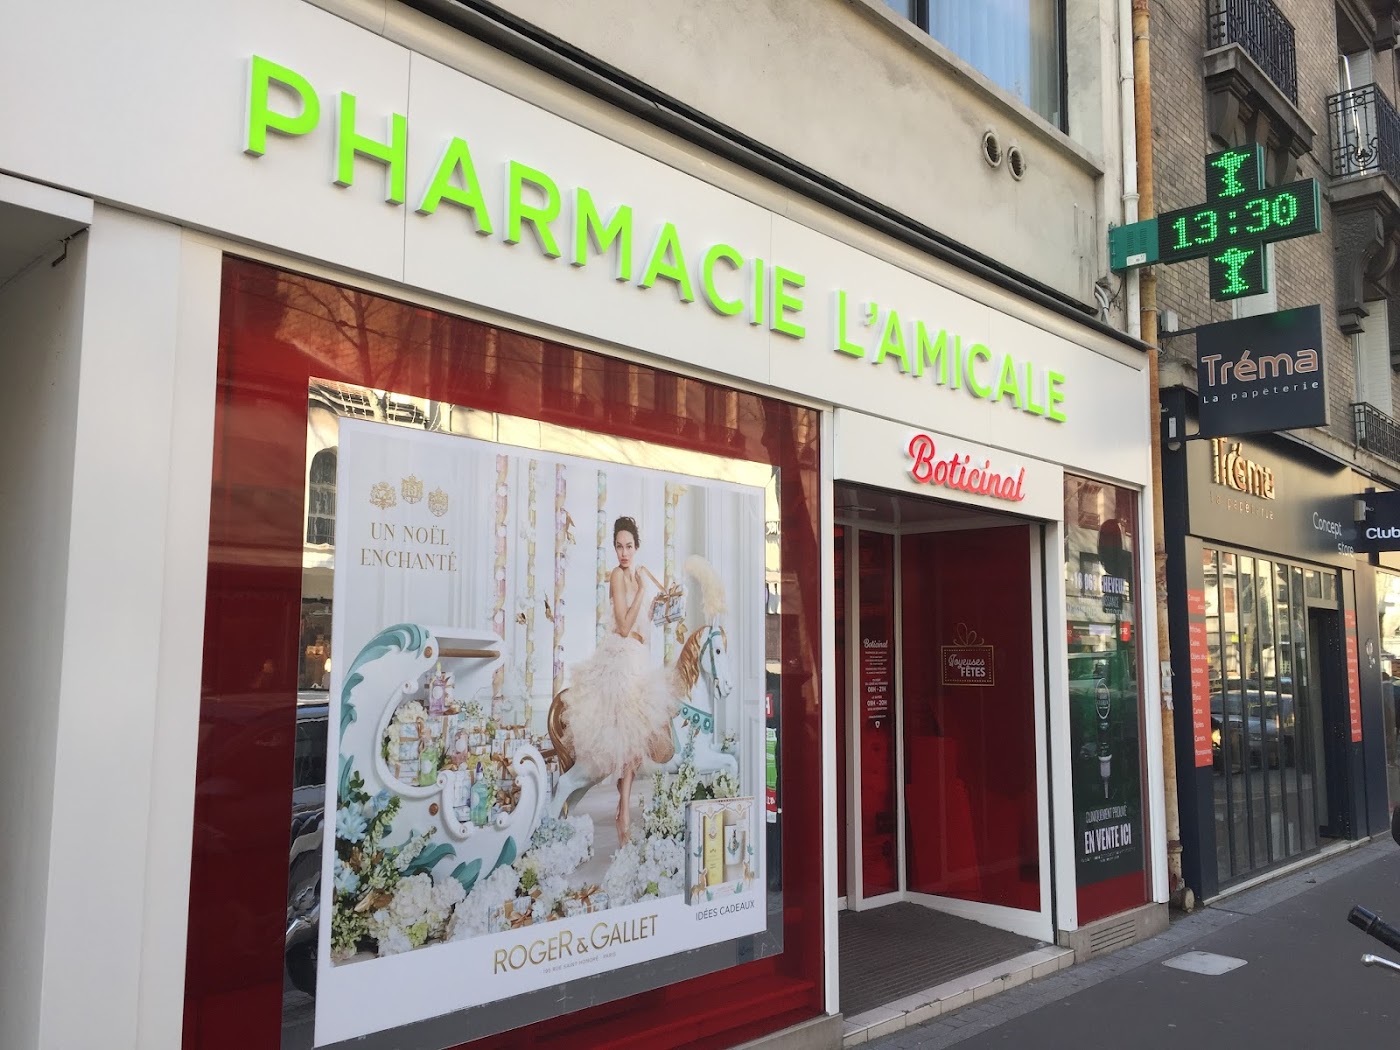 Pharmacie de l'Amicale Boulogne - Boticinal